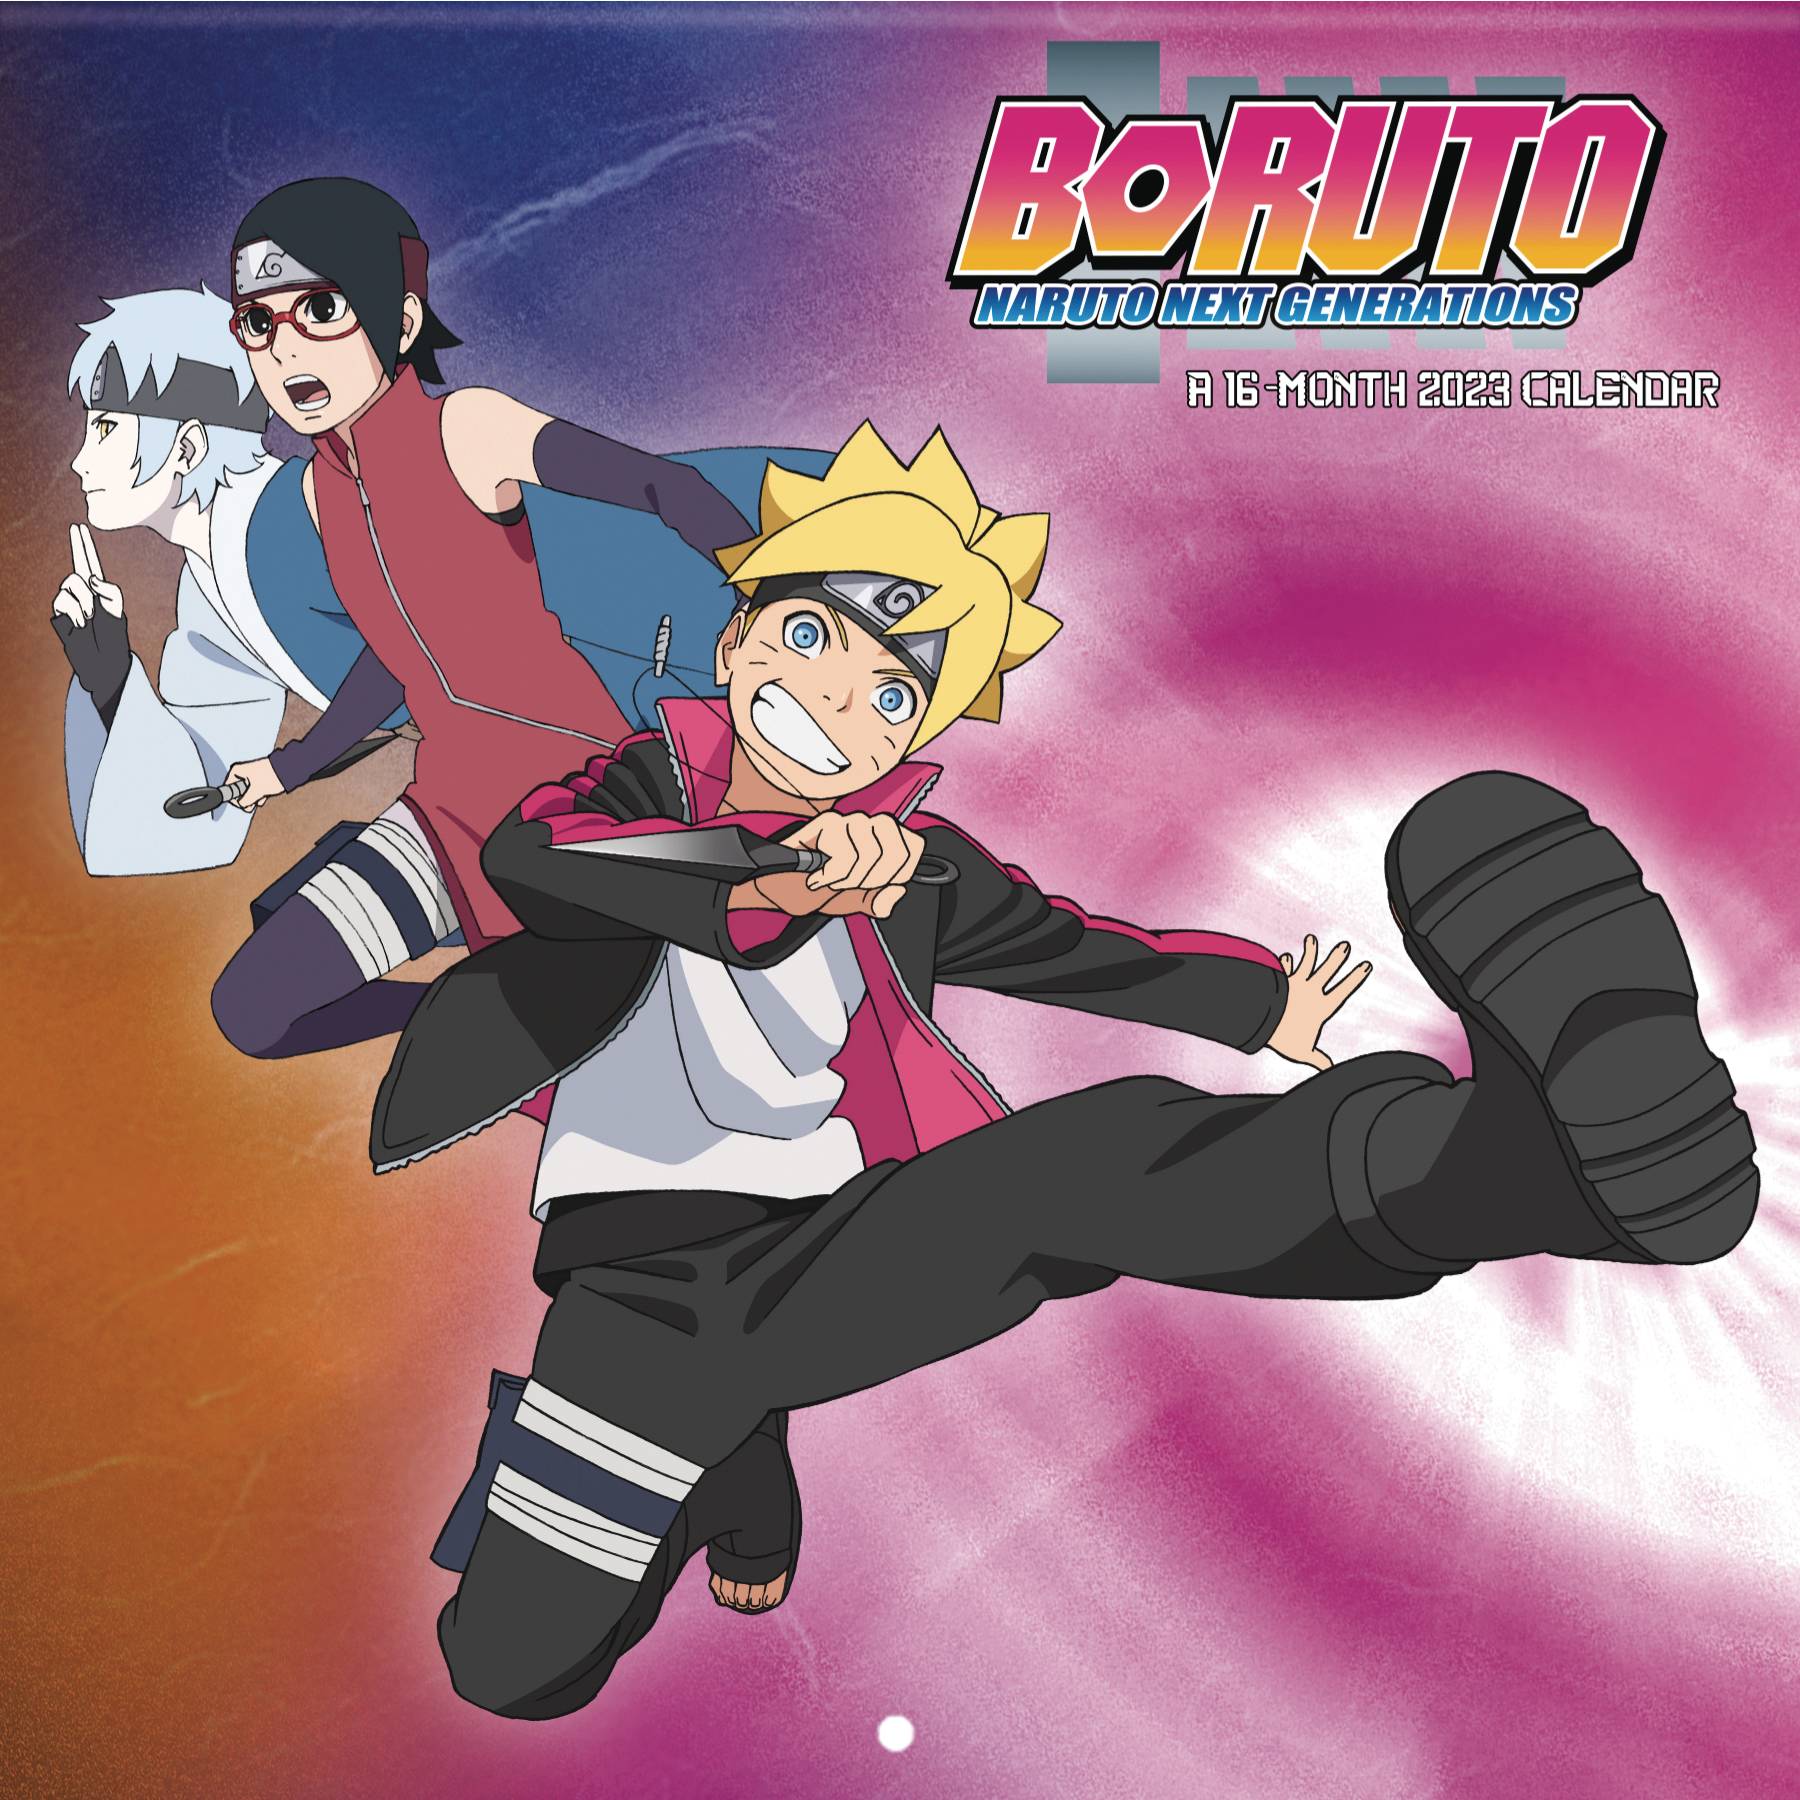 Saruto:Boruto to Naruto the Next Generation 😂🔥#2026takenover